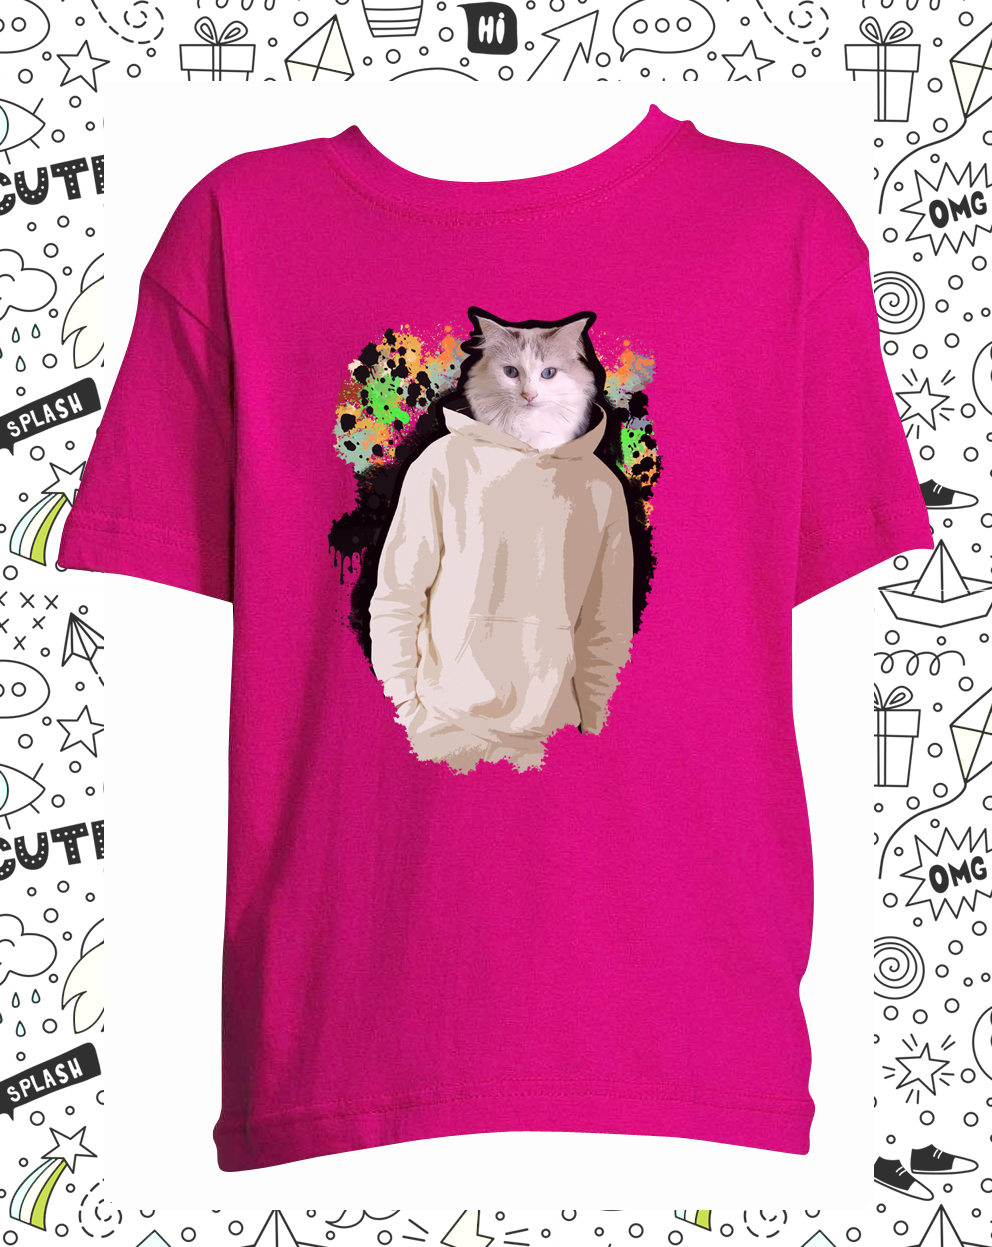 t-shirt chat dripping fushia enfant